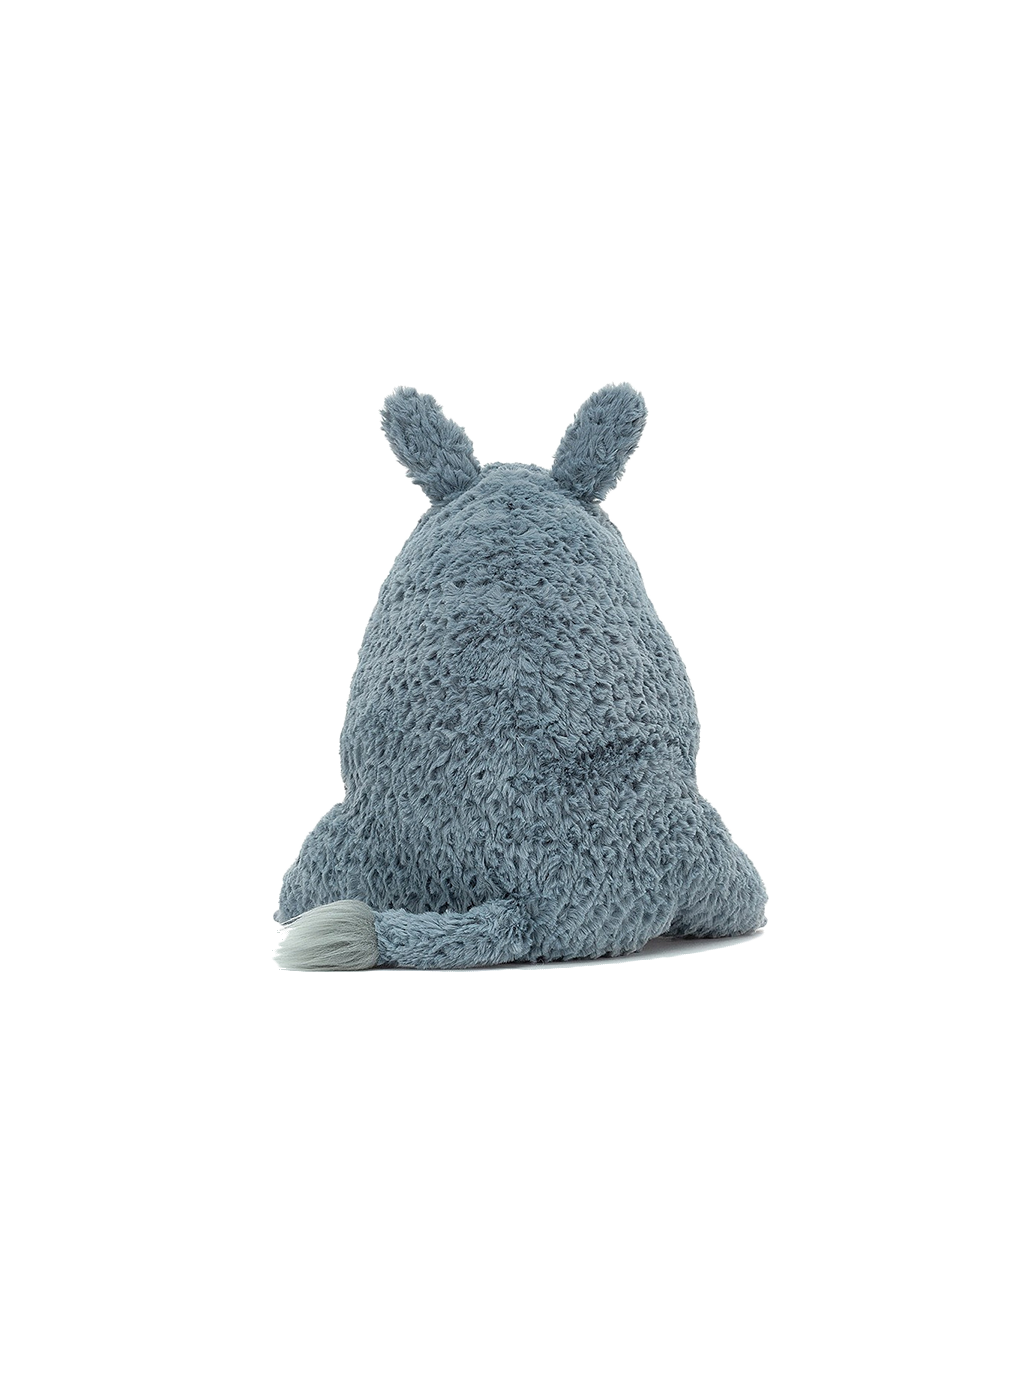 soft cuddly toy rhino